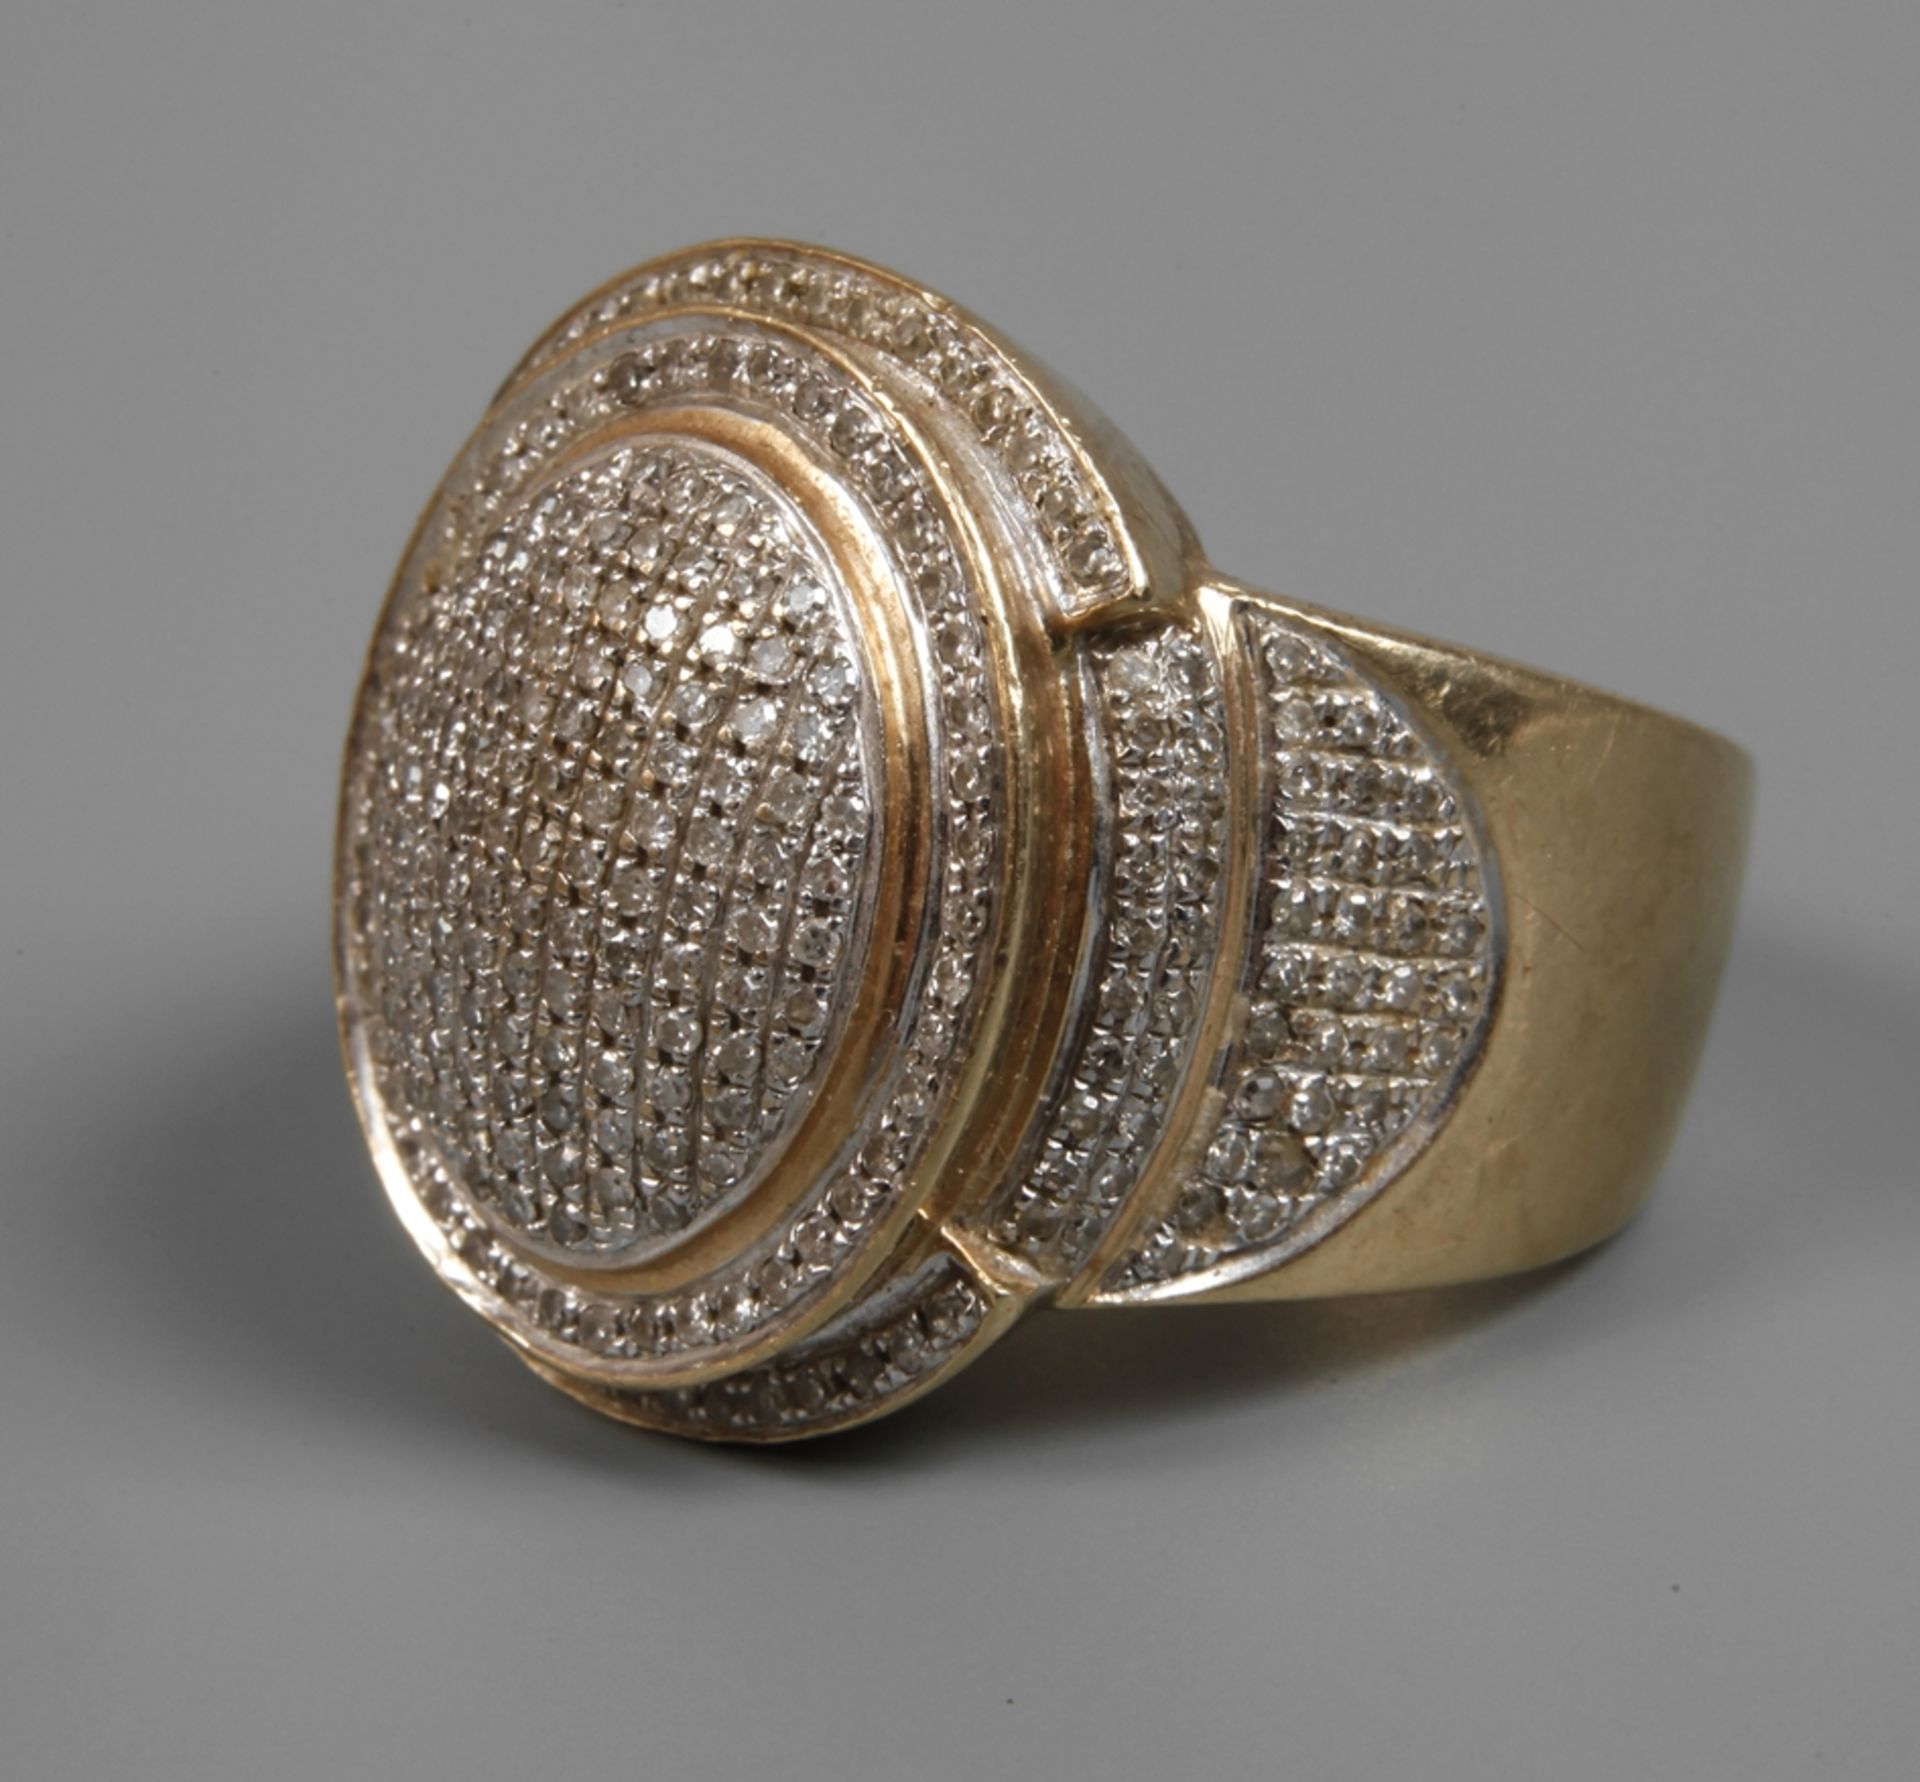 Precious ring with diamond setting